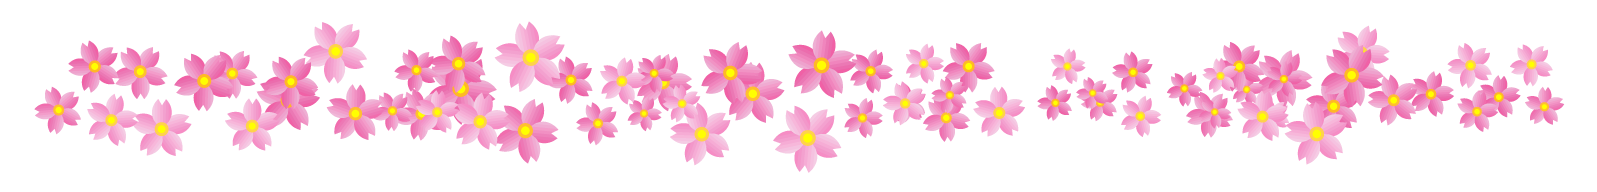 桜の花ライン 罫線イラスト 沢山 桜 4月 ライン 罫線 素材のプチッチ